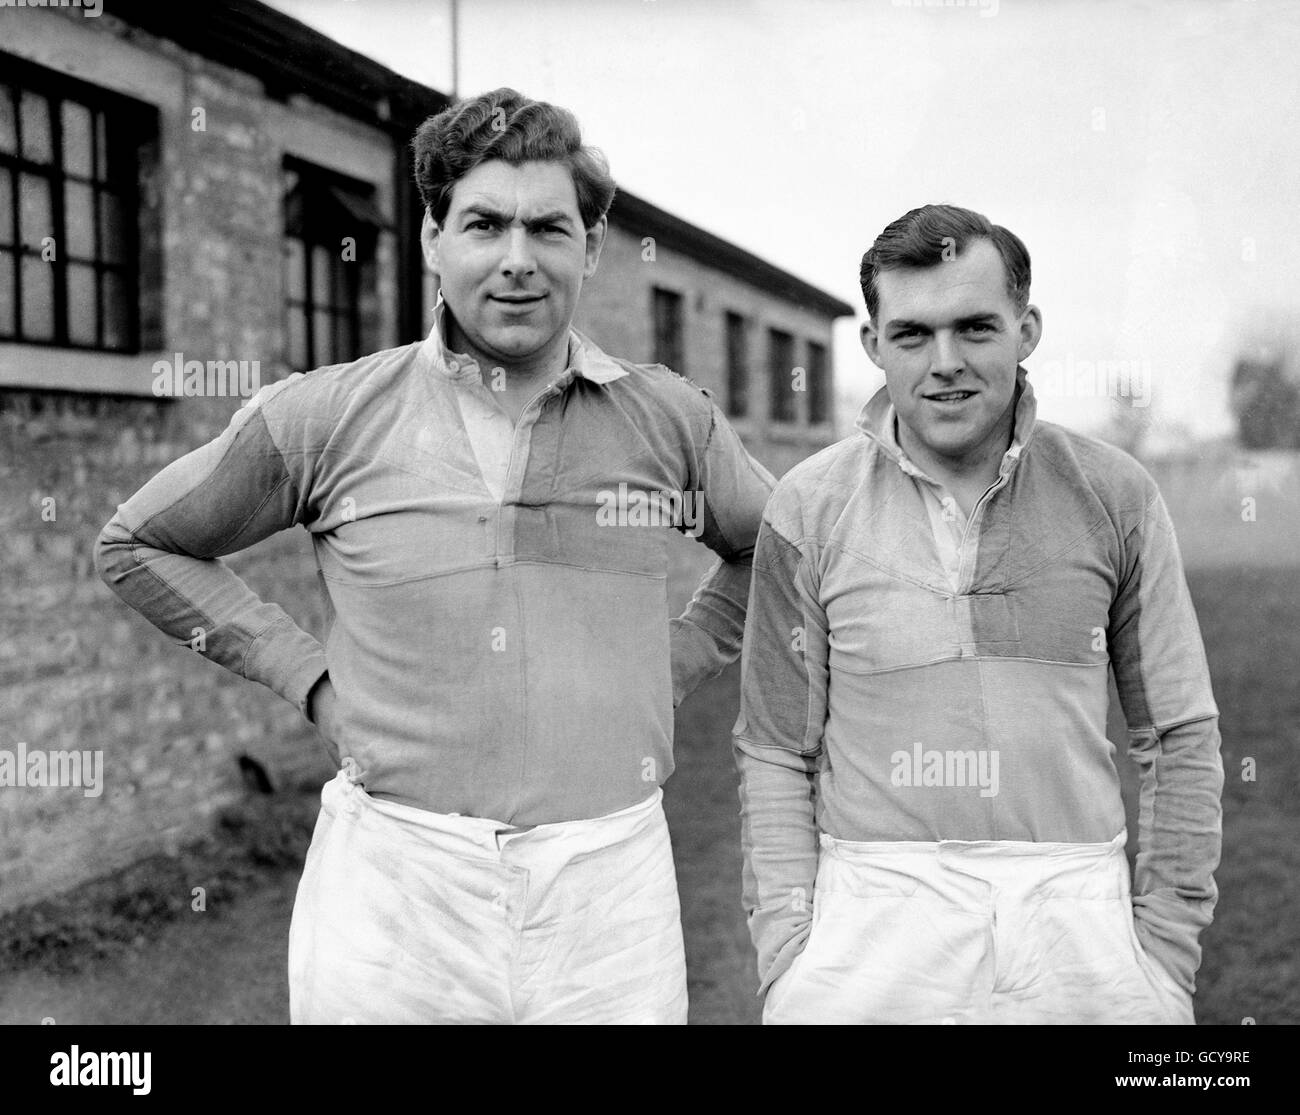 Rugby - Arlequines Photocall - Teddington Foto de stock